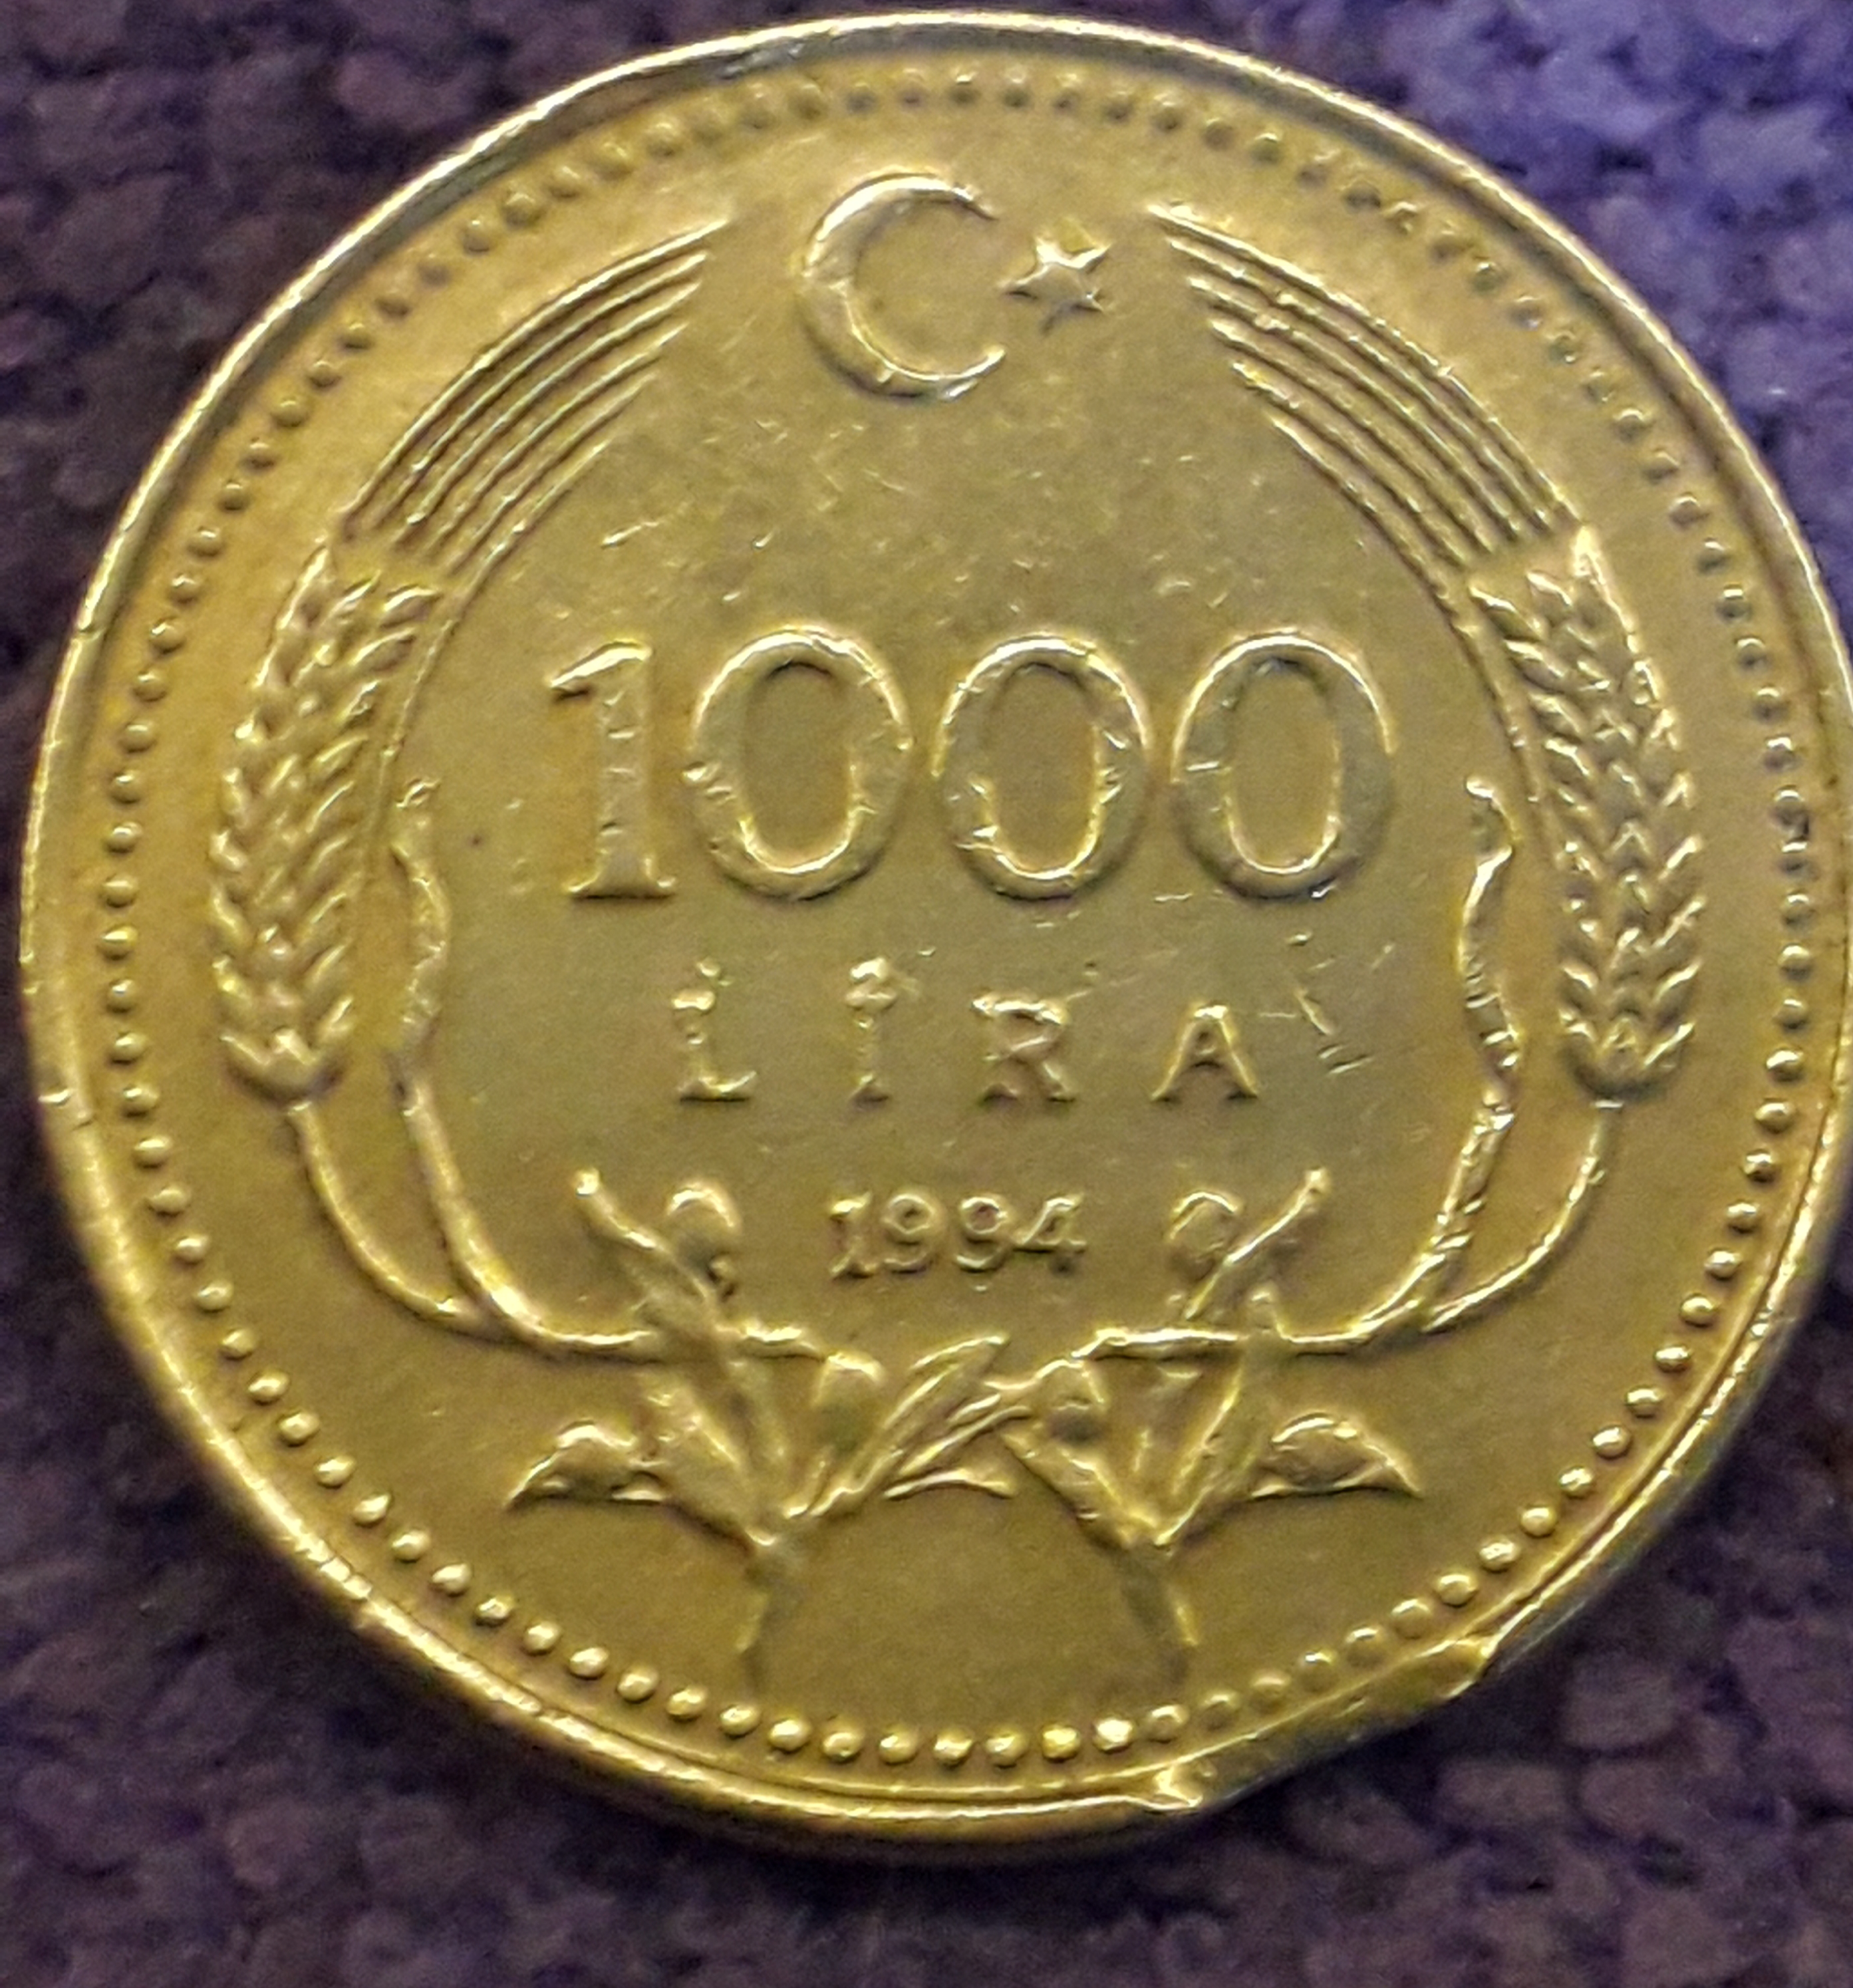 1000 Lira (Eksik Kısım) 1994 Arka Yüz